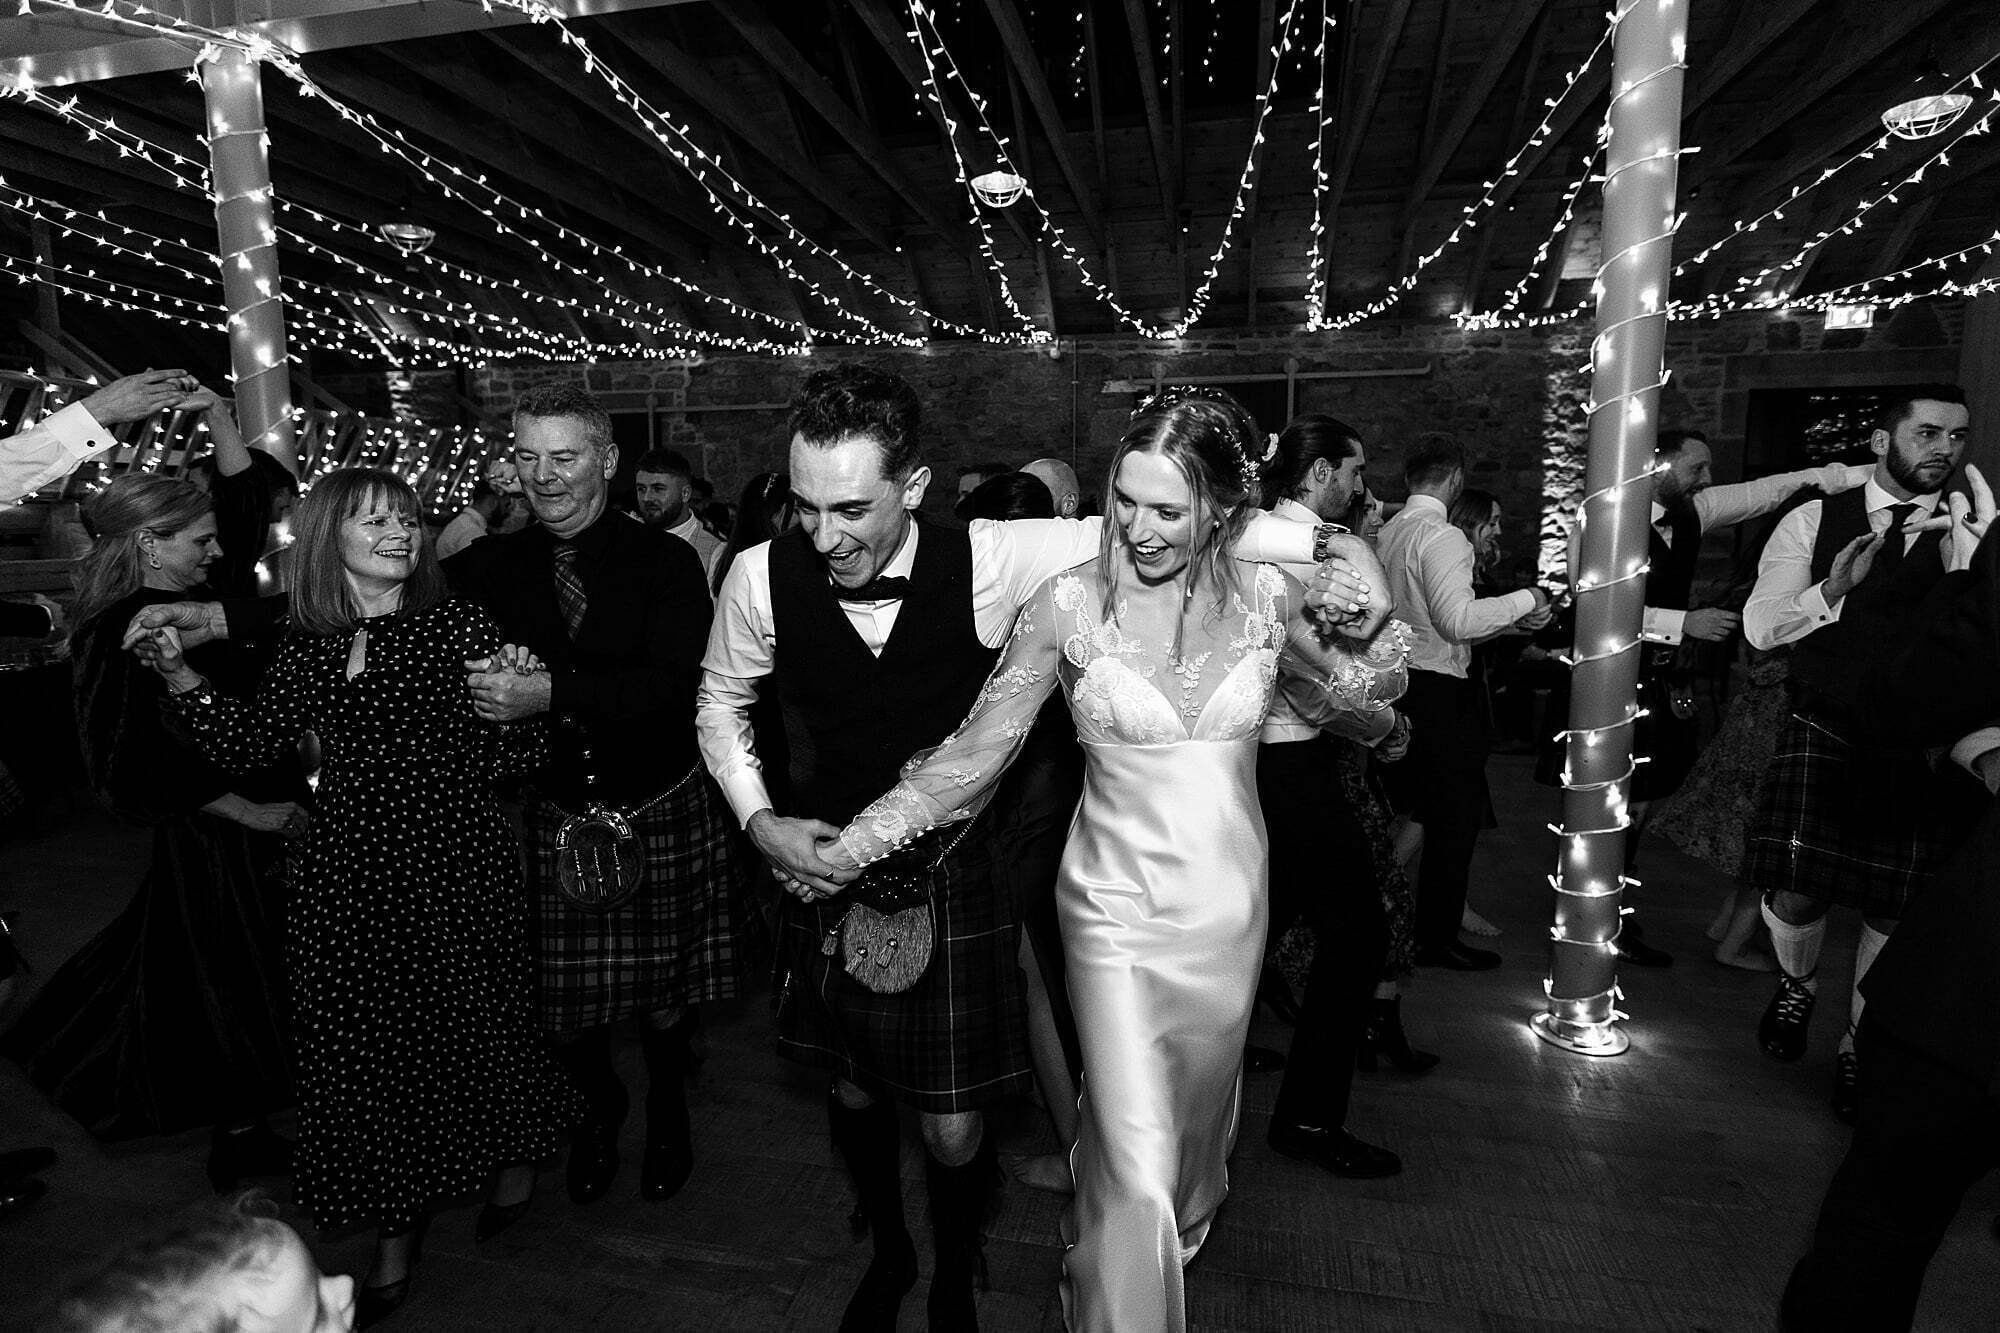 guardswell farm winter wedding bride groom ceilidh dancing